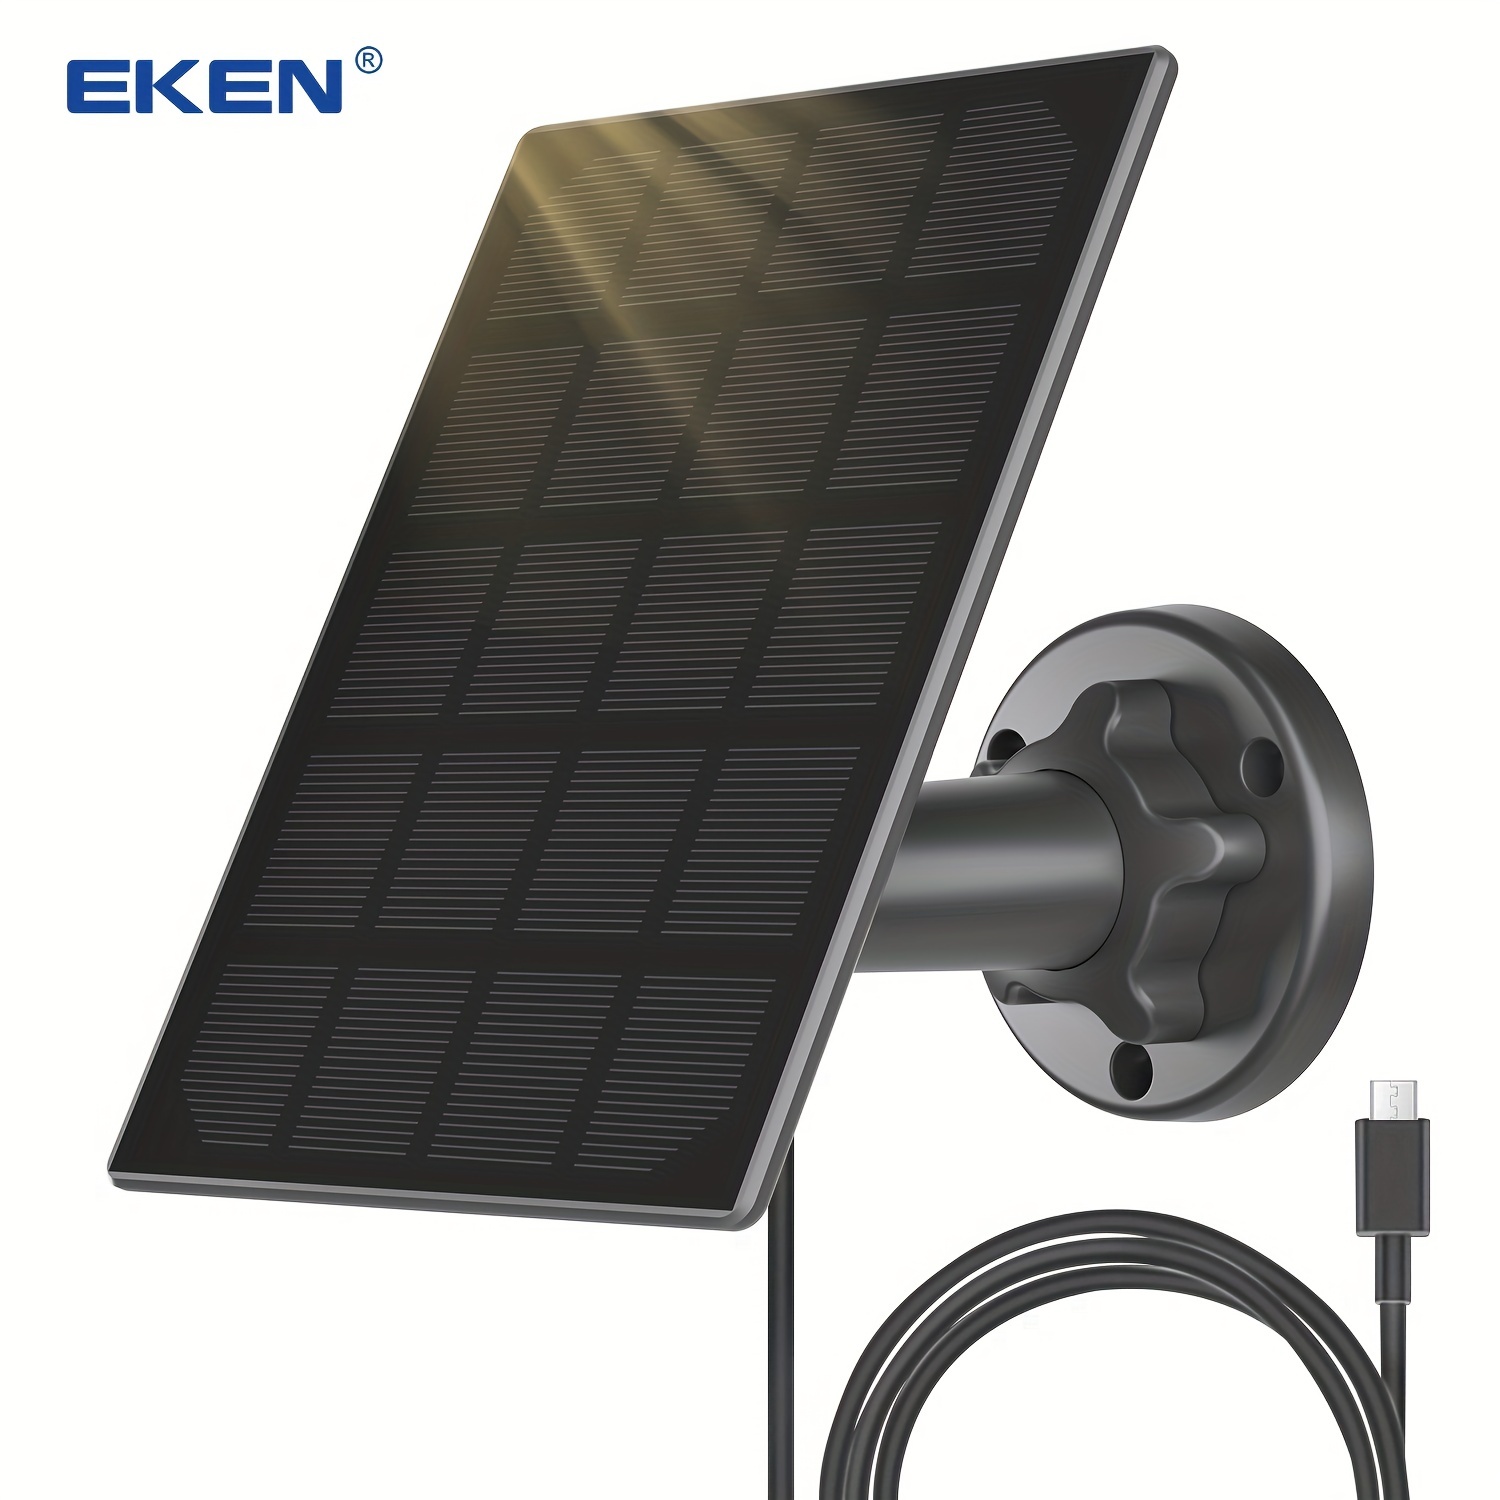 Cargador Solar Portatil Universal Para Celulares Telefono Bateria De Celular  US